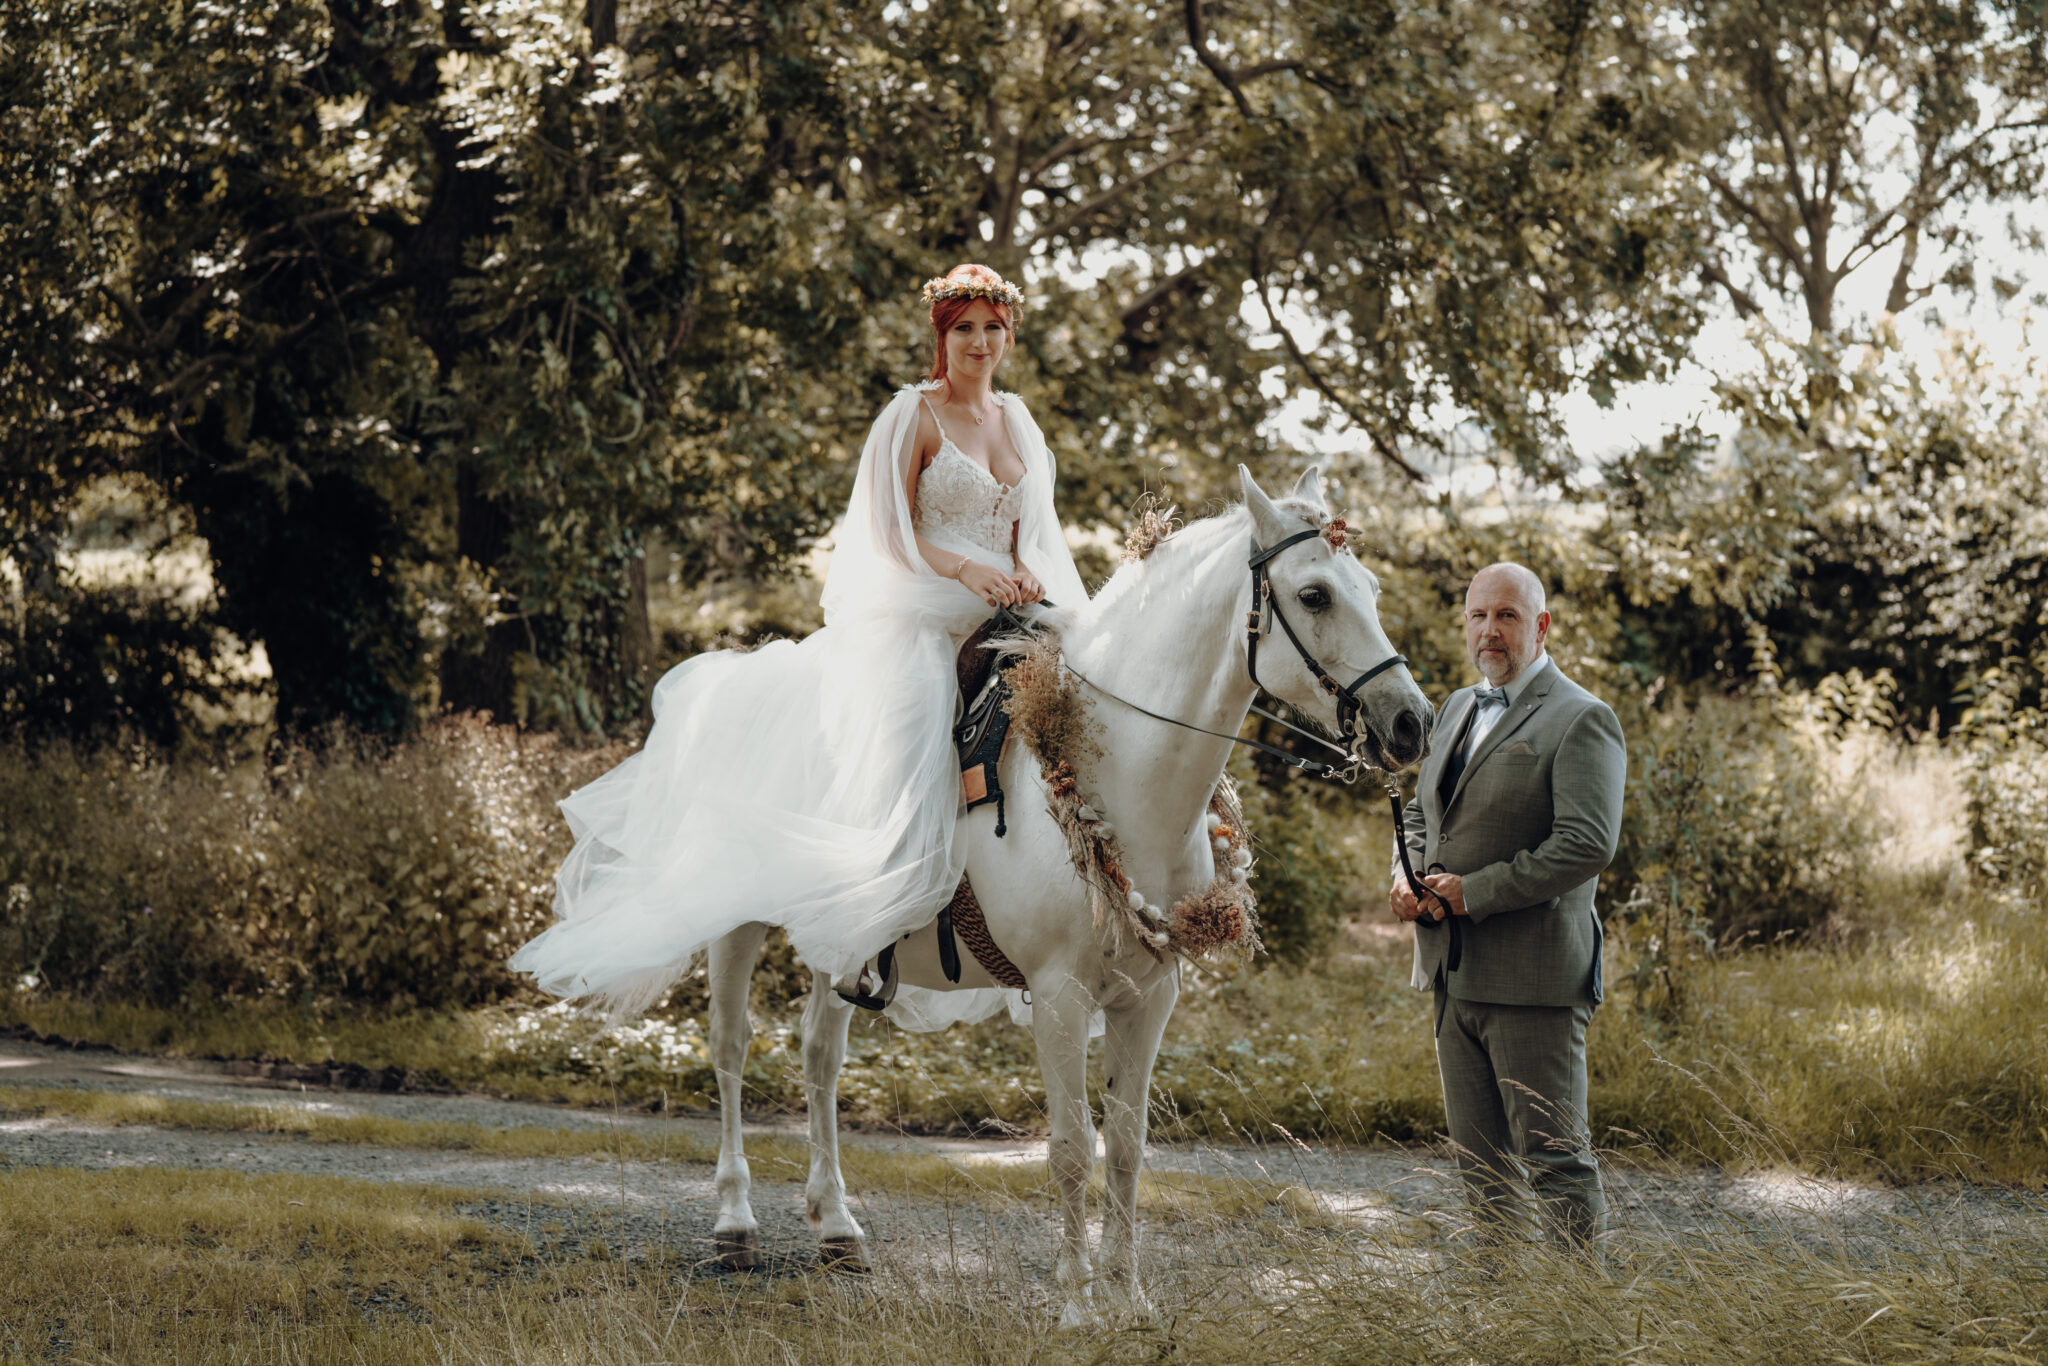 Einzug der Braut zur Trauung auf Pferd